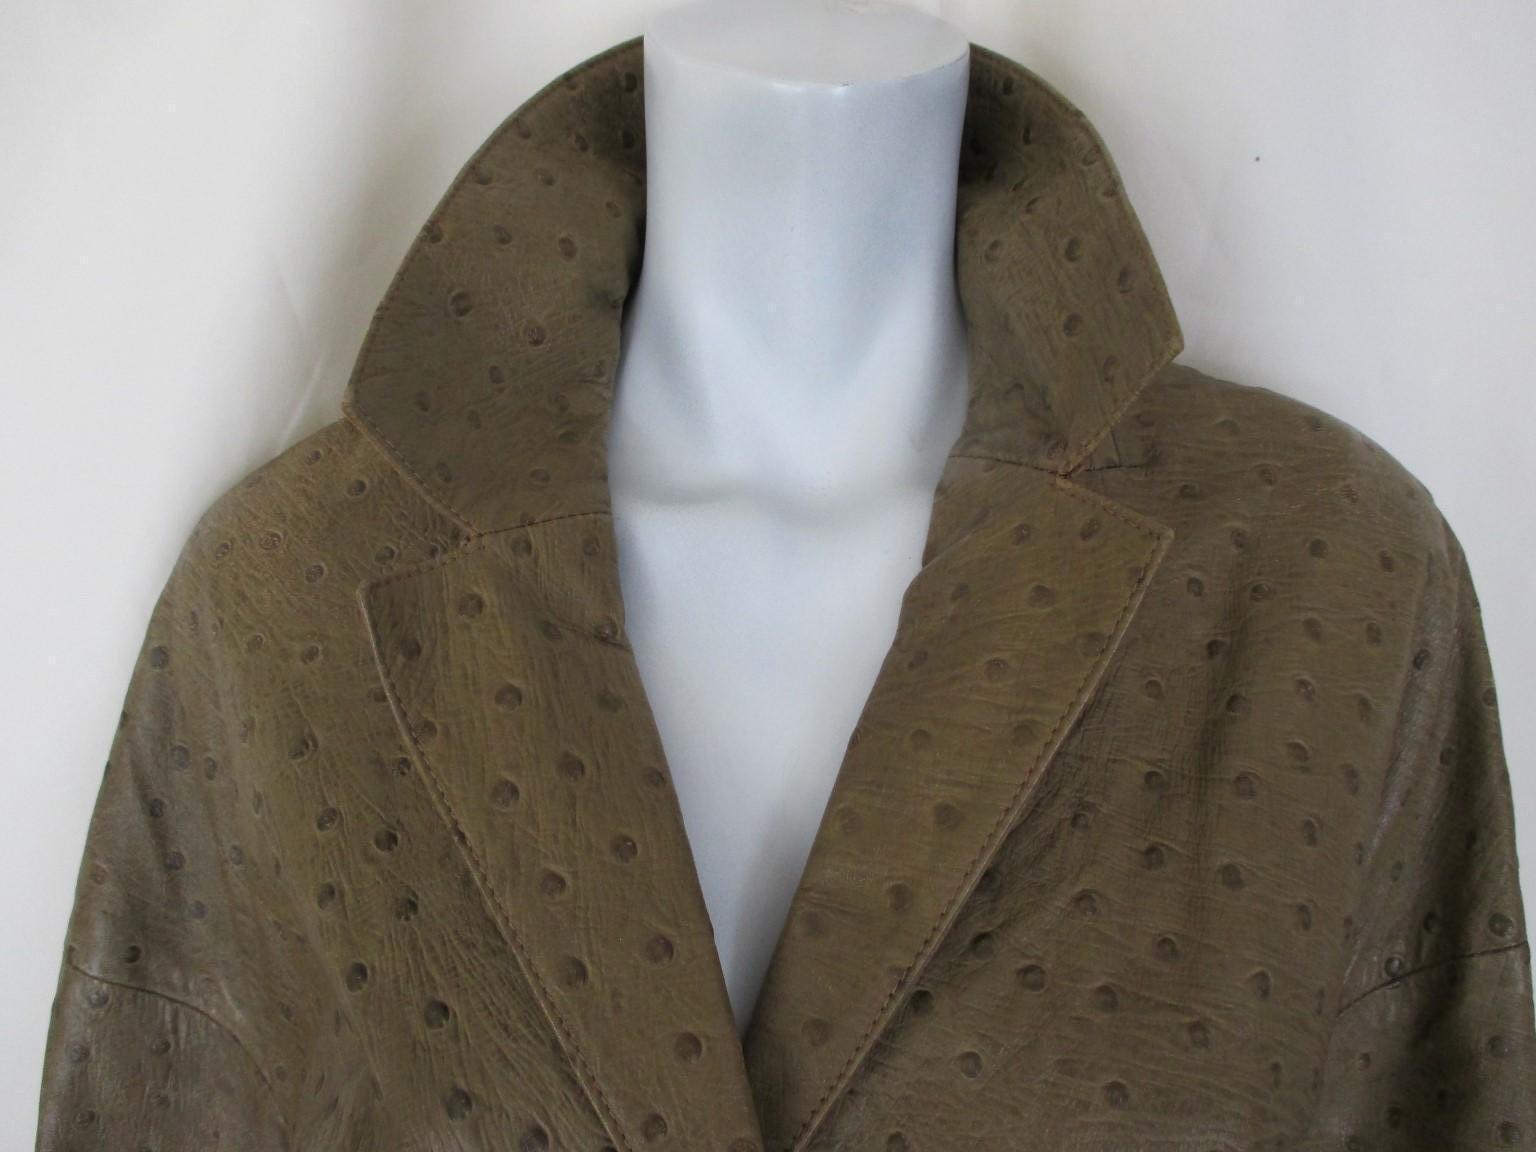 Dieser Vintage-Mantel aus natürlichem Straußenleder hat 2 Taschen und 3 Knöpfe.
Farbe: Olivgrün
Selten, nicht leicht zu finden.
Es ist in einem mittelmäßigen Vintage-Zustand, mit einigen Abnutzungserscheinungen am Leder und am Innenfutter an den